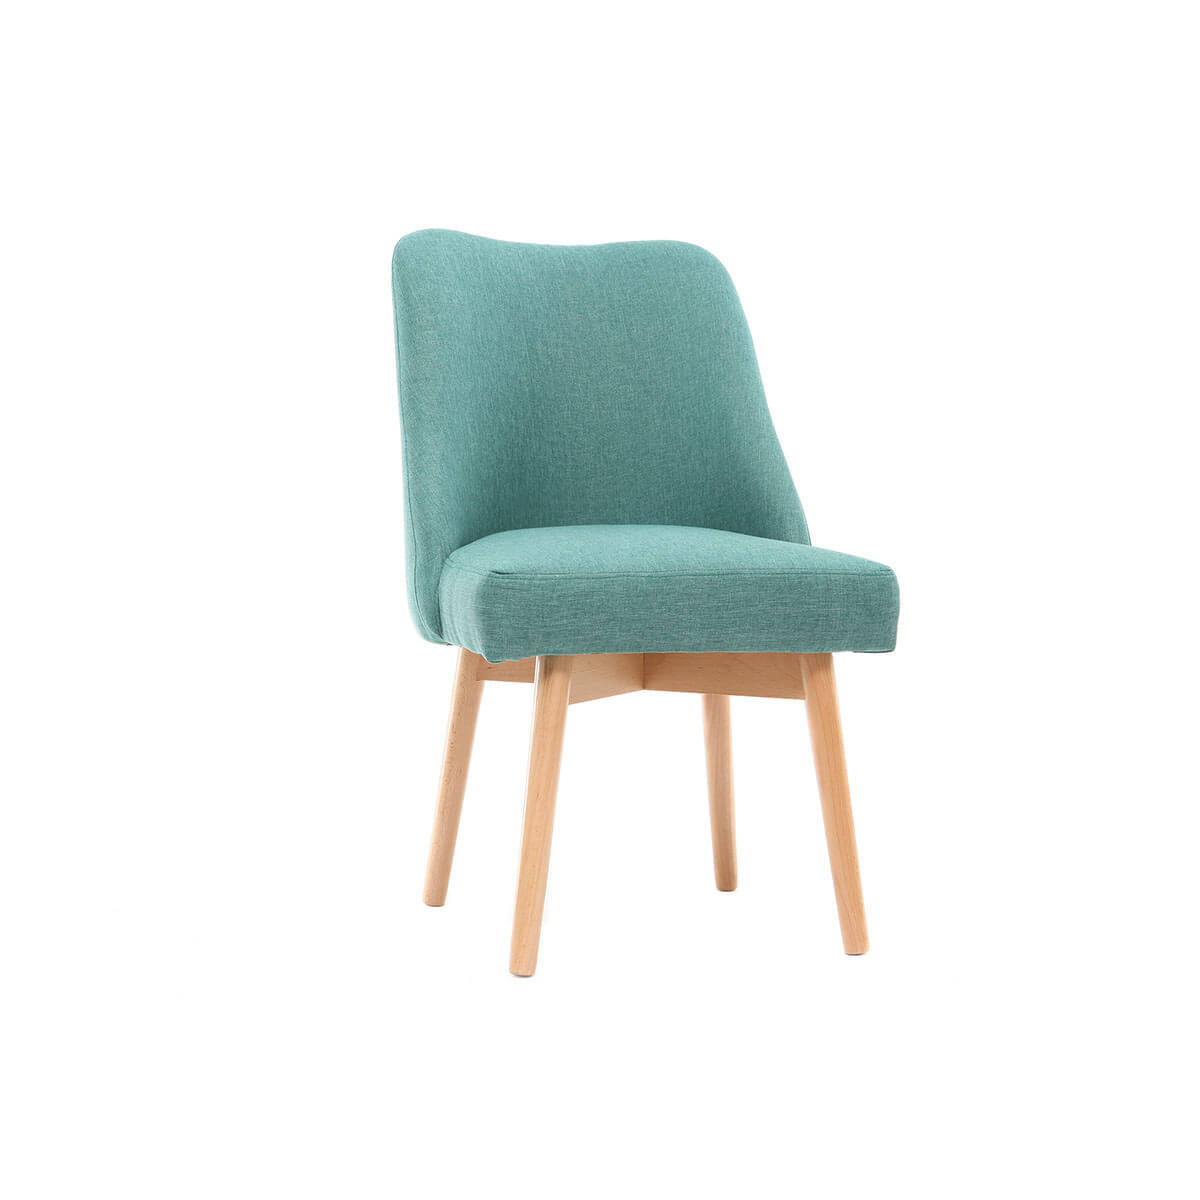 Chaise scandinave en tissu bleu turquoise et bois clair LIV vue1